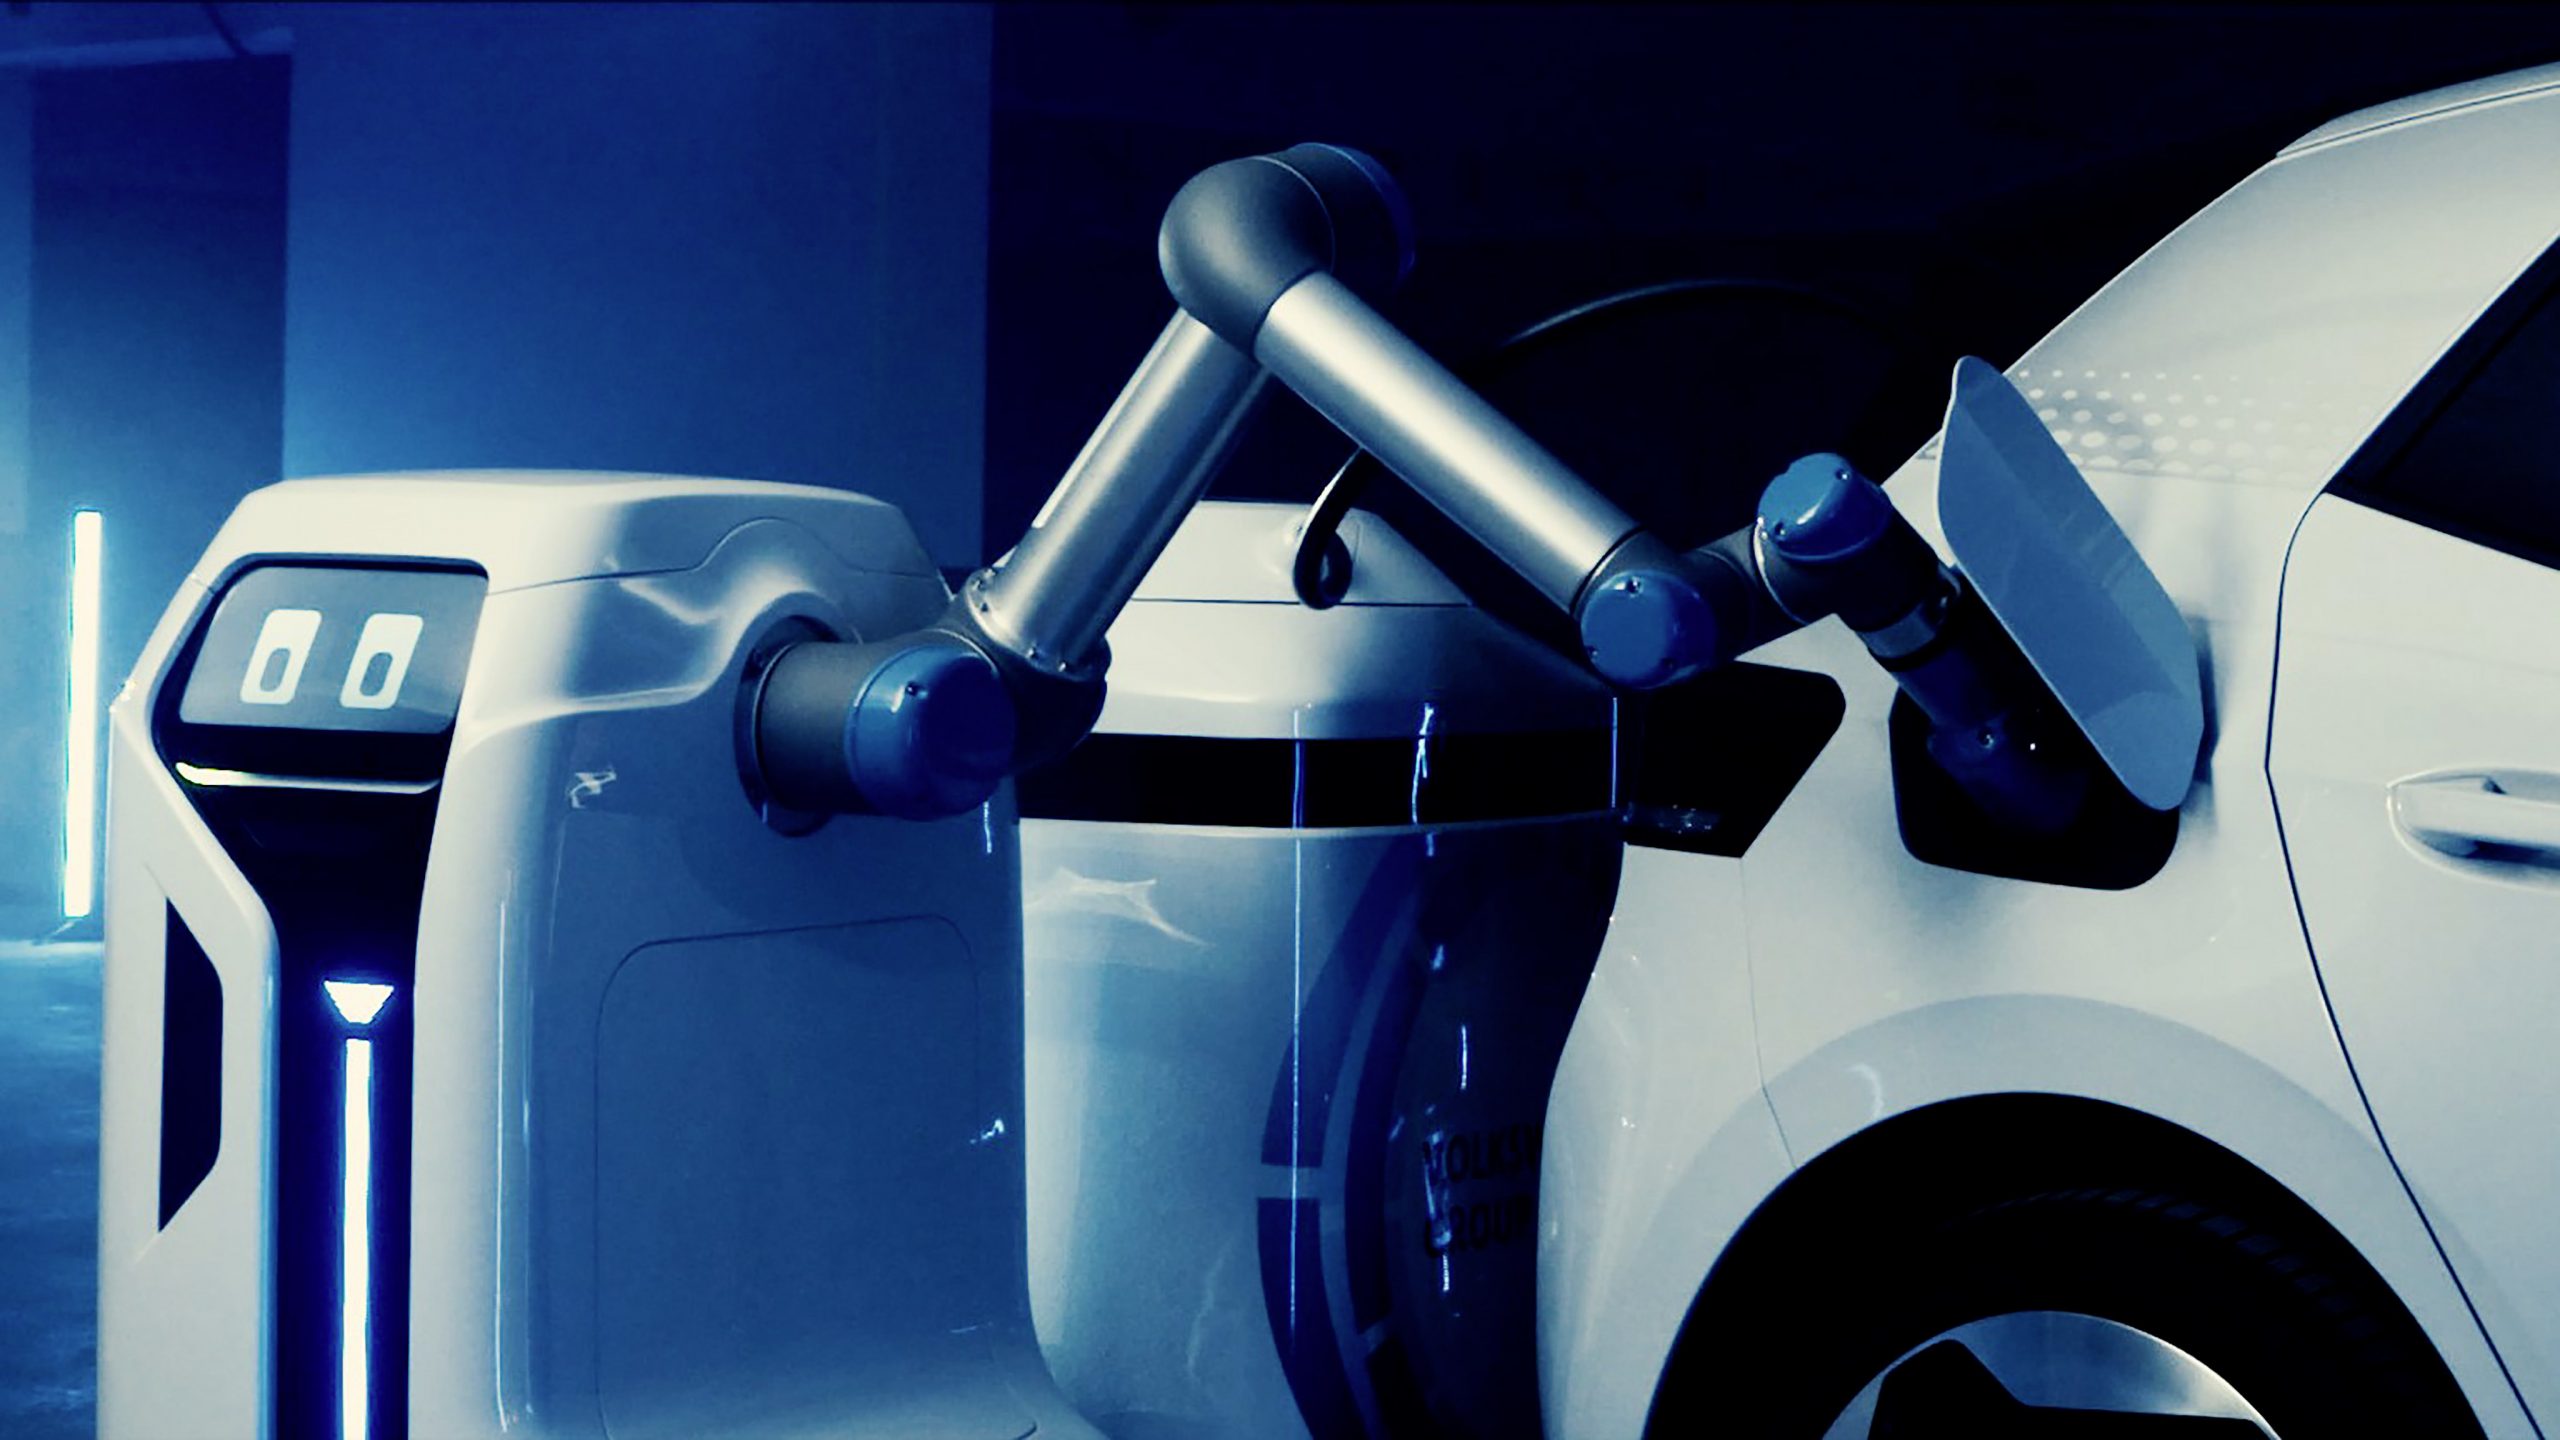 Volkswagen робот. Volkswagen ev Charging. Робот для зарядки электромобилей. Робот Фольксваген. Автономные роботы.